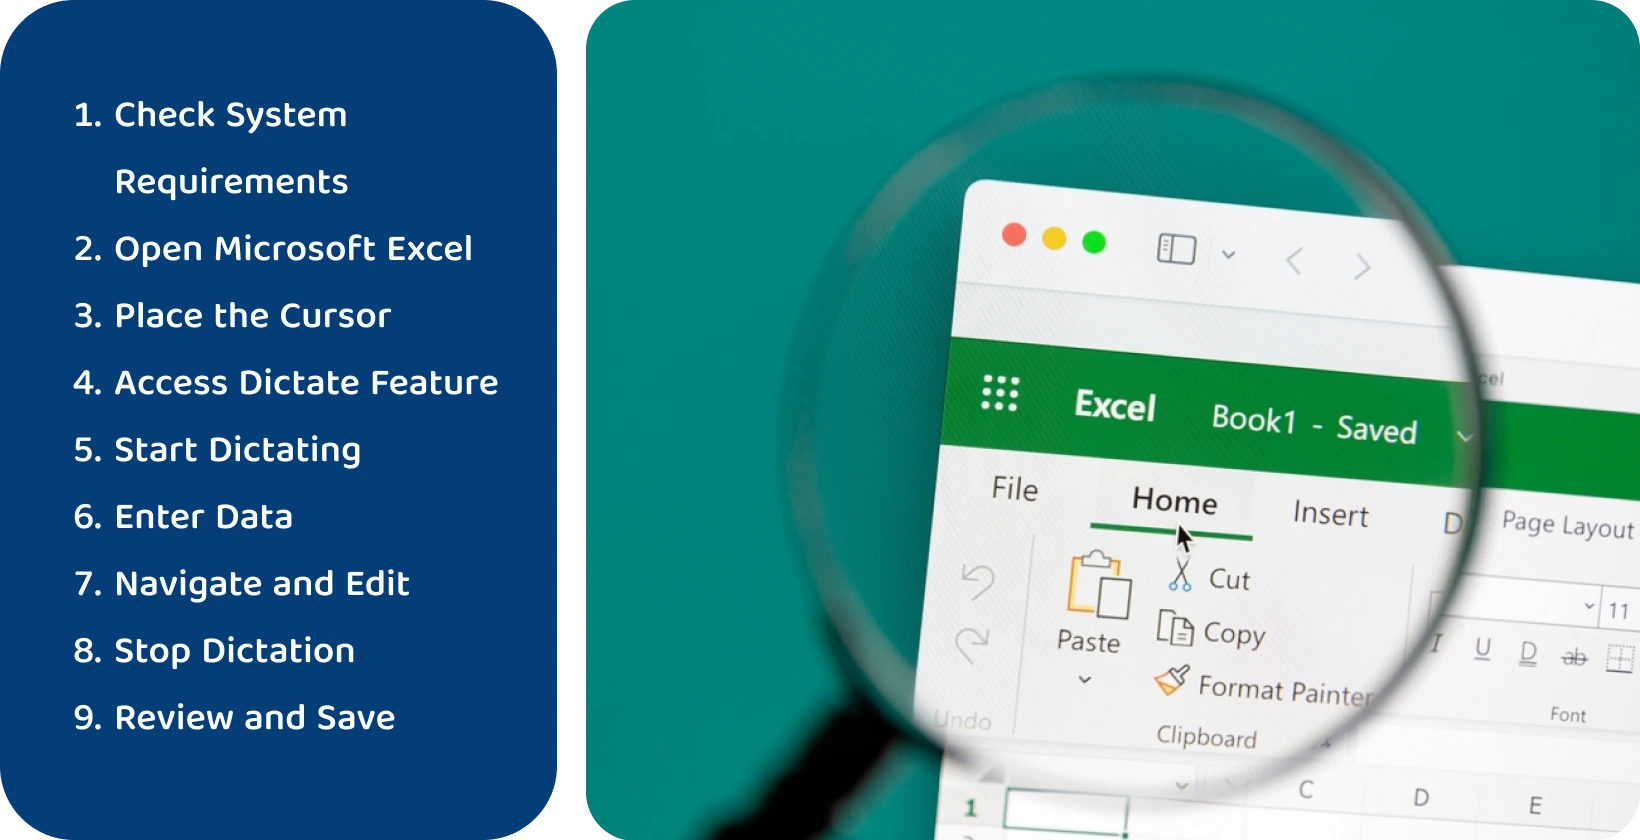 Izmantojiet diktēšanas funkciju Excel, lai efektīvi pārrakstītu runu tekstā, kā parādīts palielinātajā interfeisā.